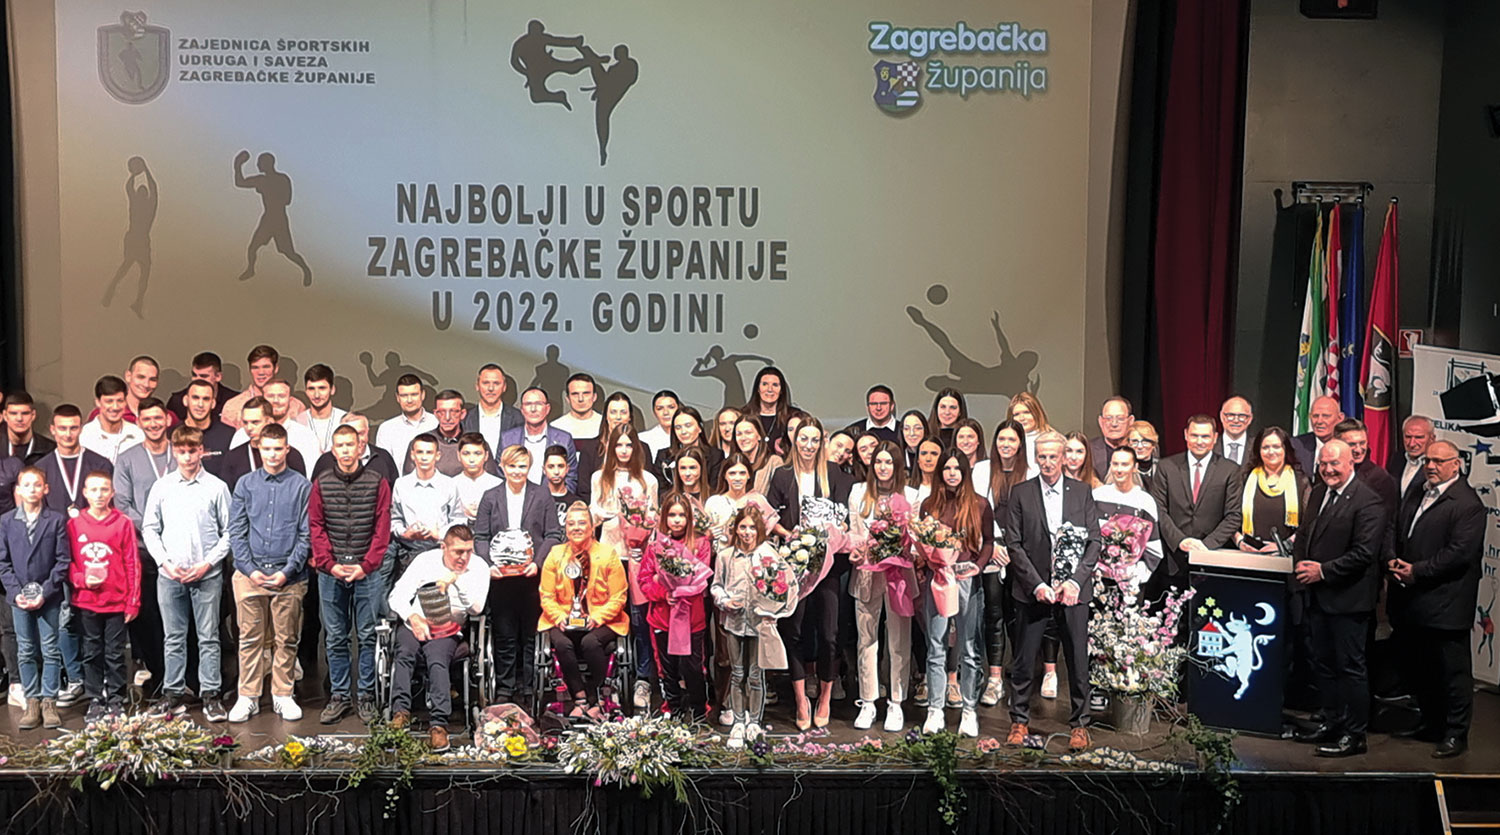 Proglaeni najbolji sportai Zagrebake upanije u 2022. godini